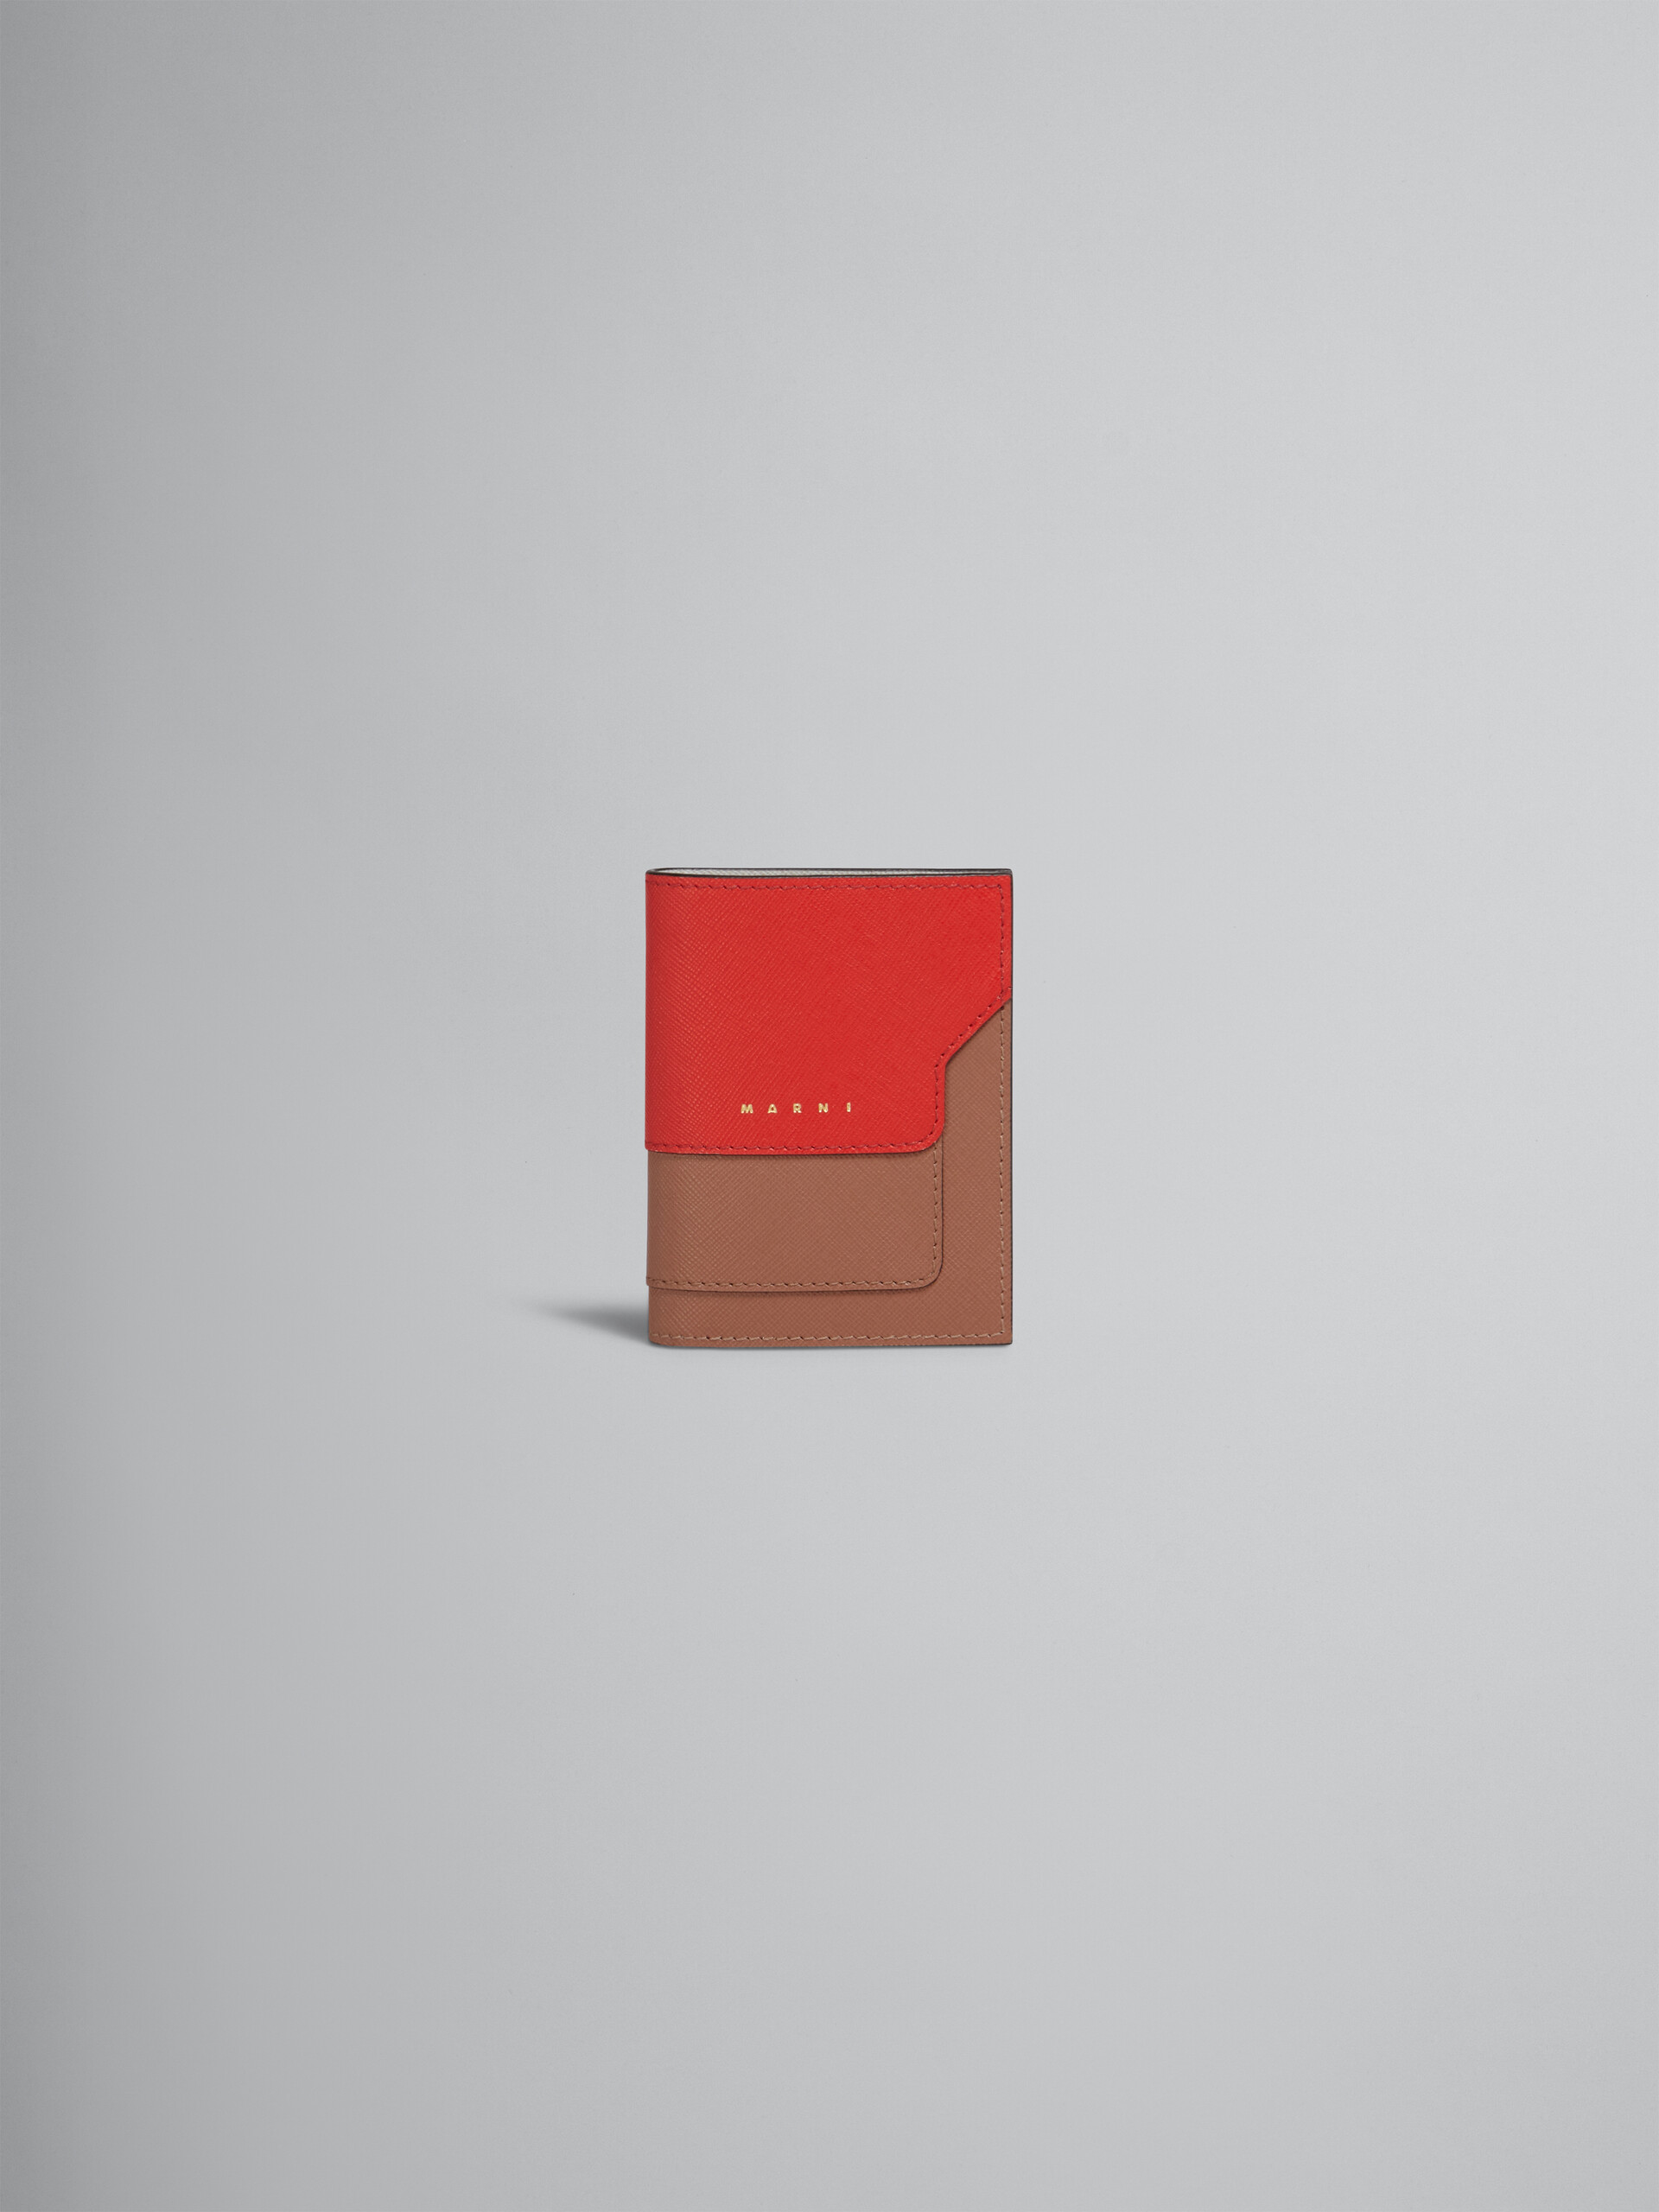 Dreifarbige zweiteilige Geldbörse aus Saffianleder in Weiß, Braun und Rot - Brieftaschen - Image 1